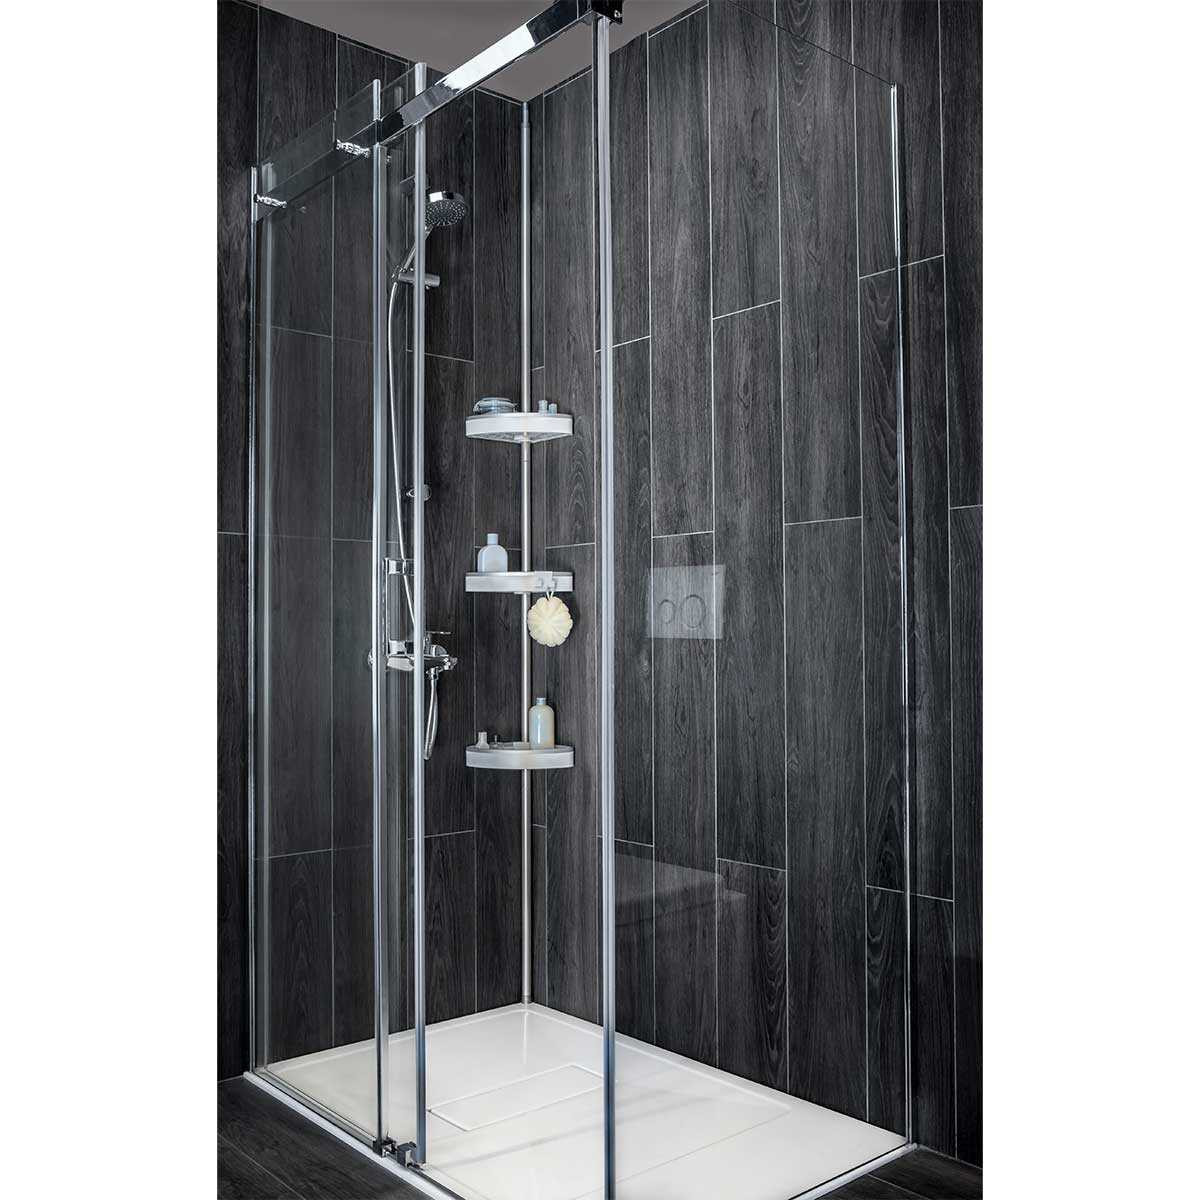 Organizador para ducha con ganchos / espejo 4 servicios Better Living